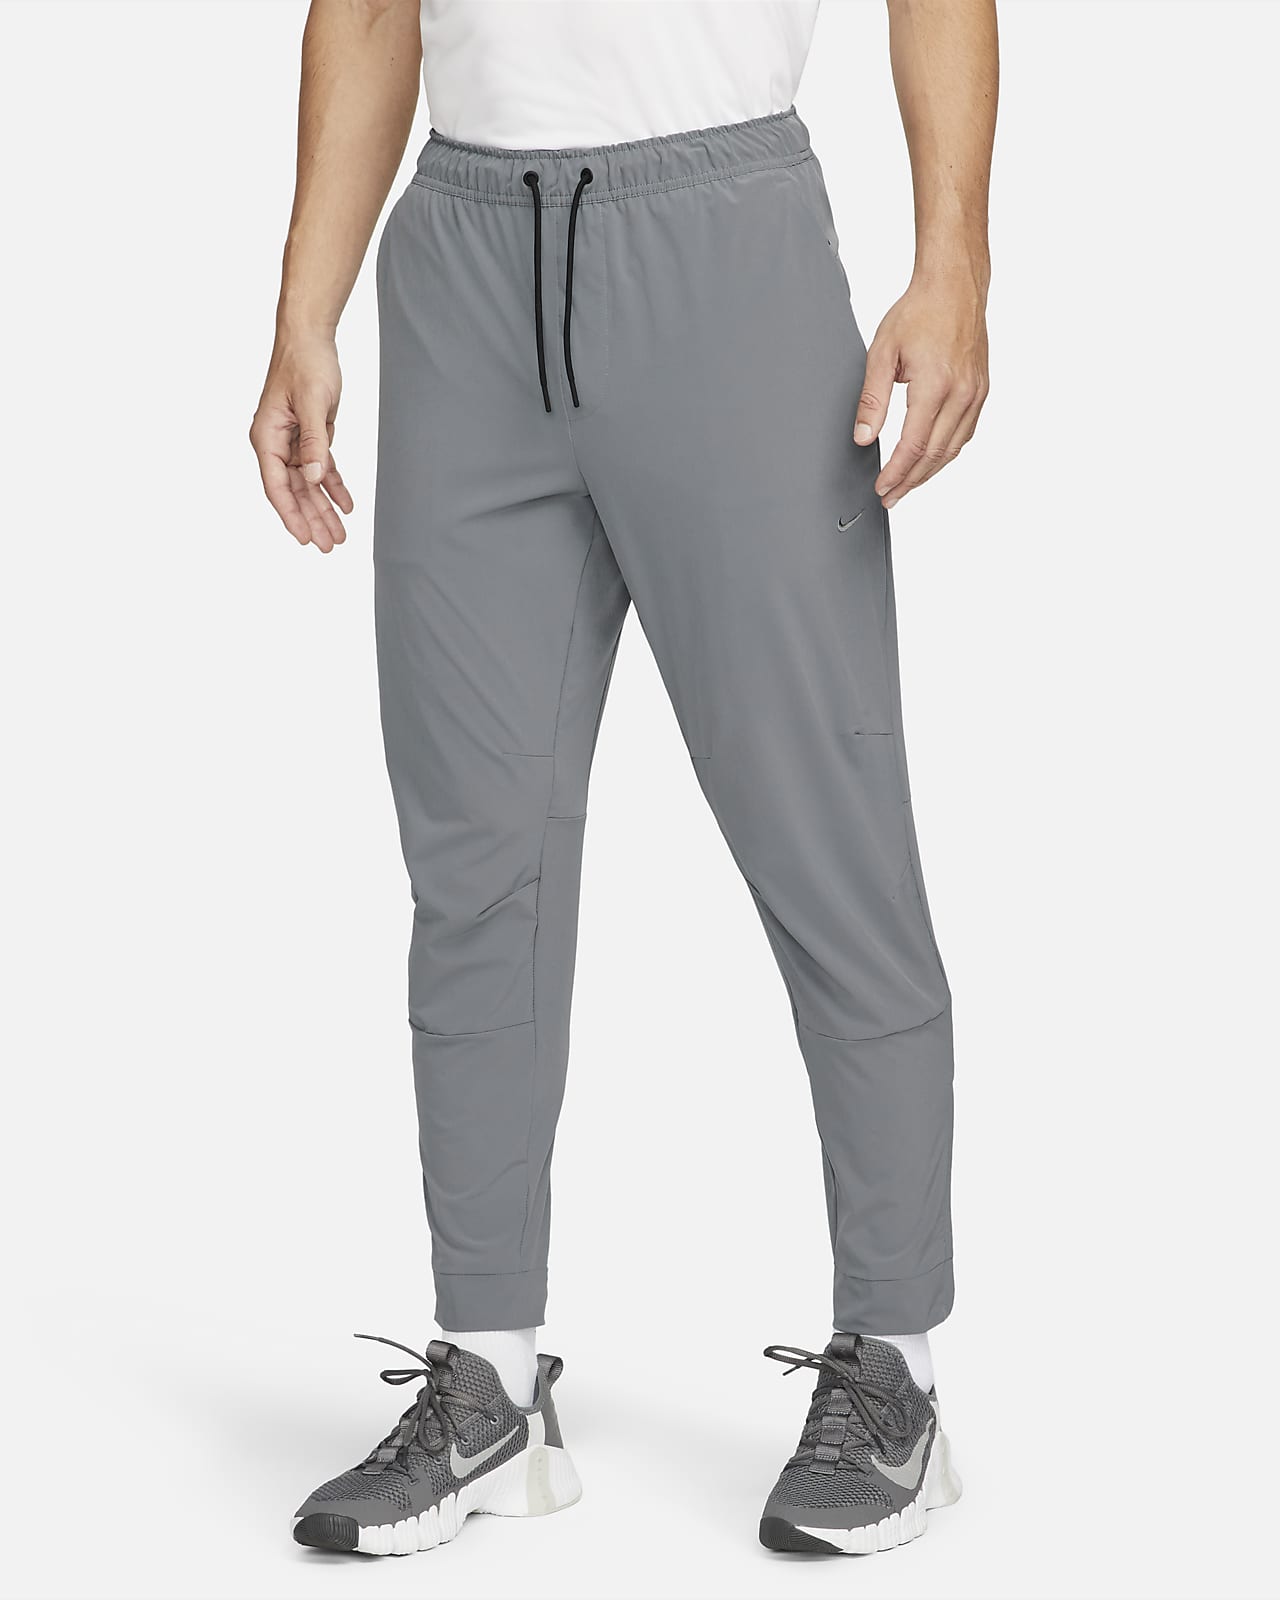 Pánské všestranné kalhoty Nike Dri-FIT Unlimited s manžetami na zip